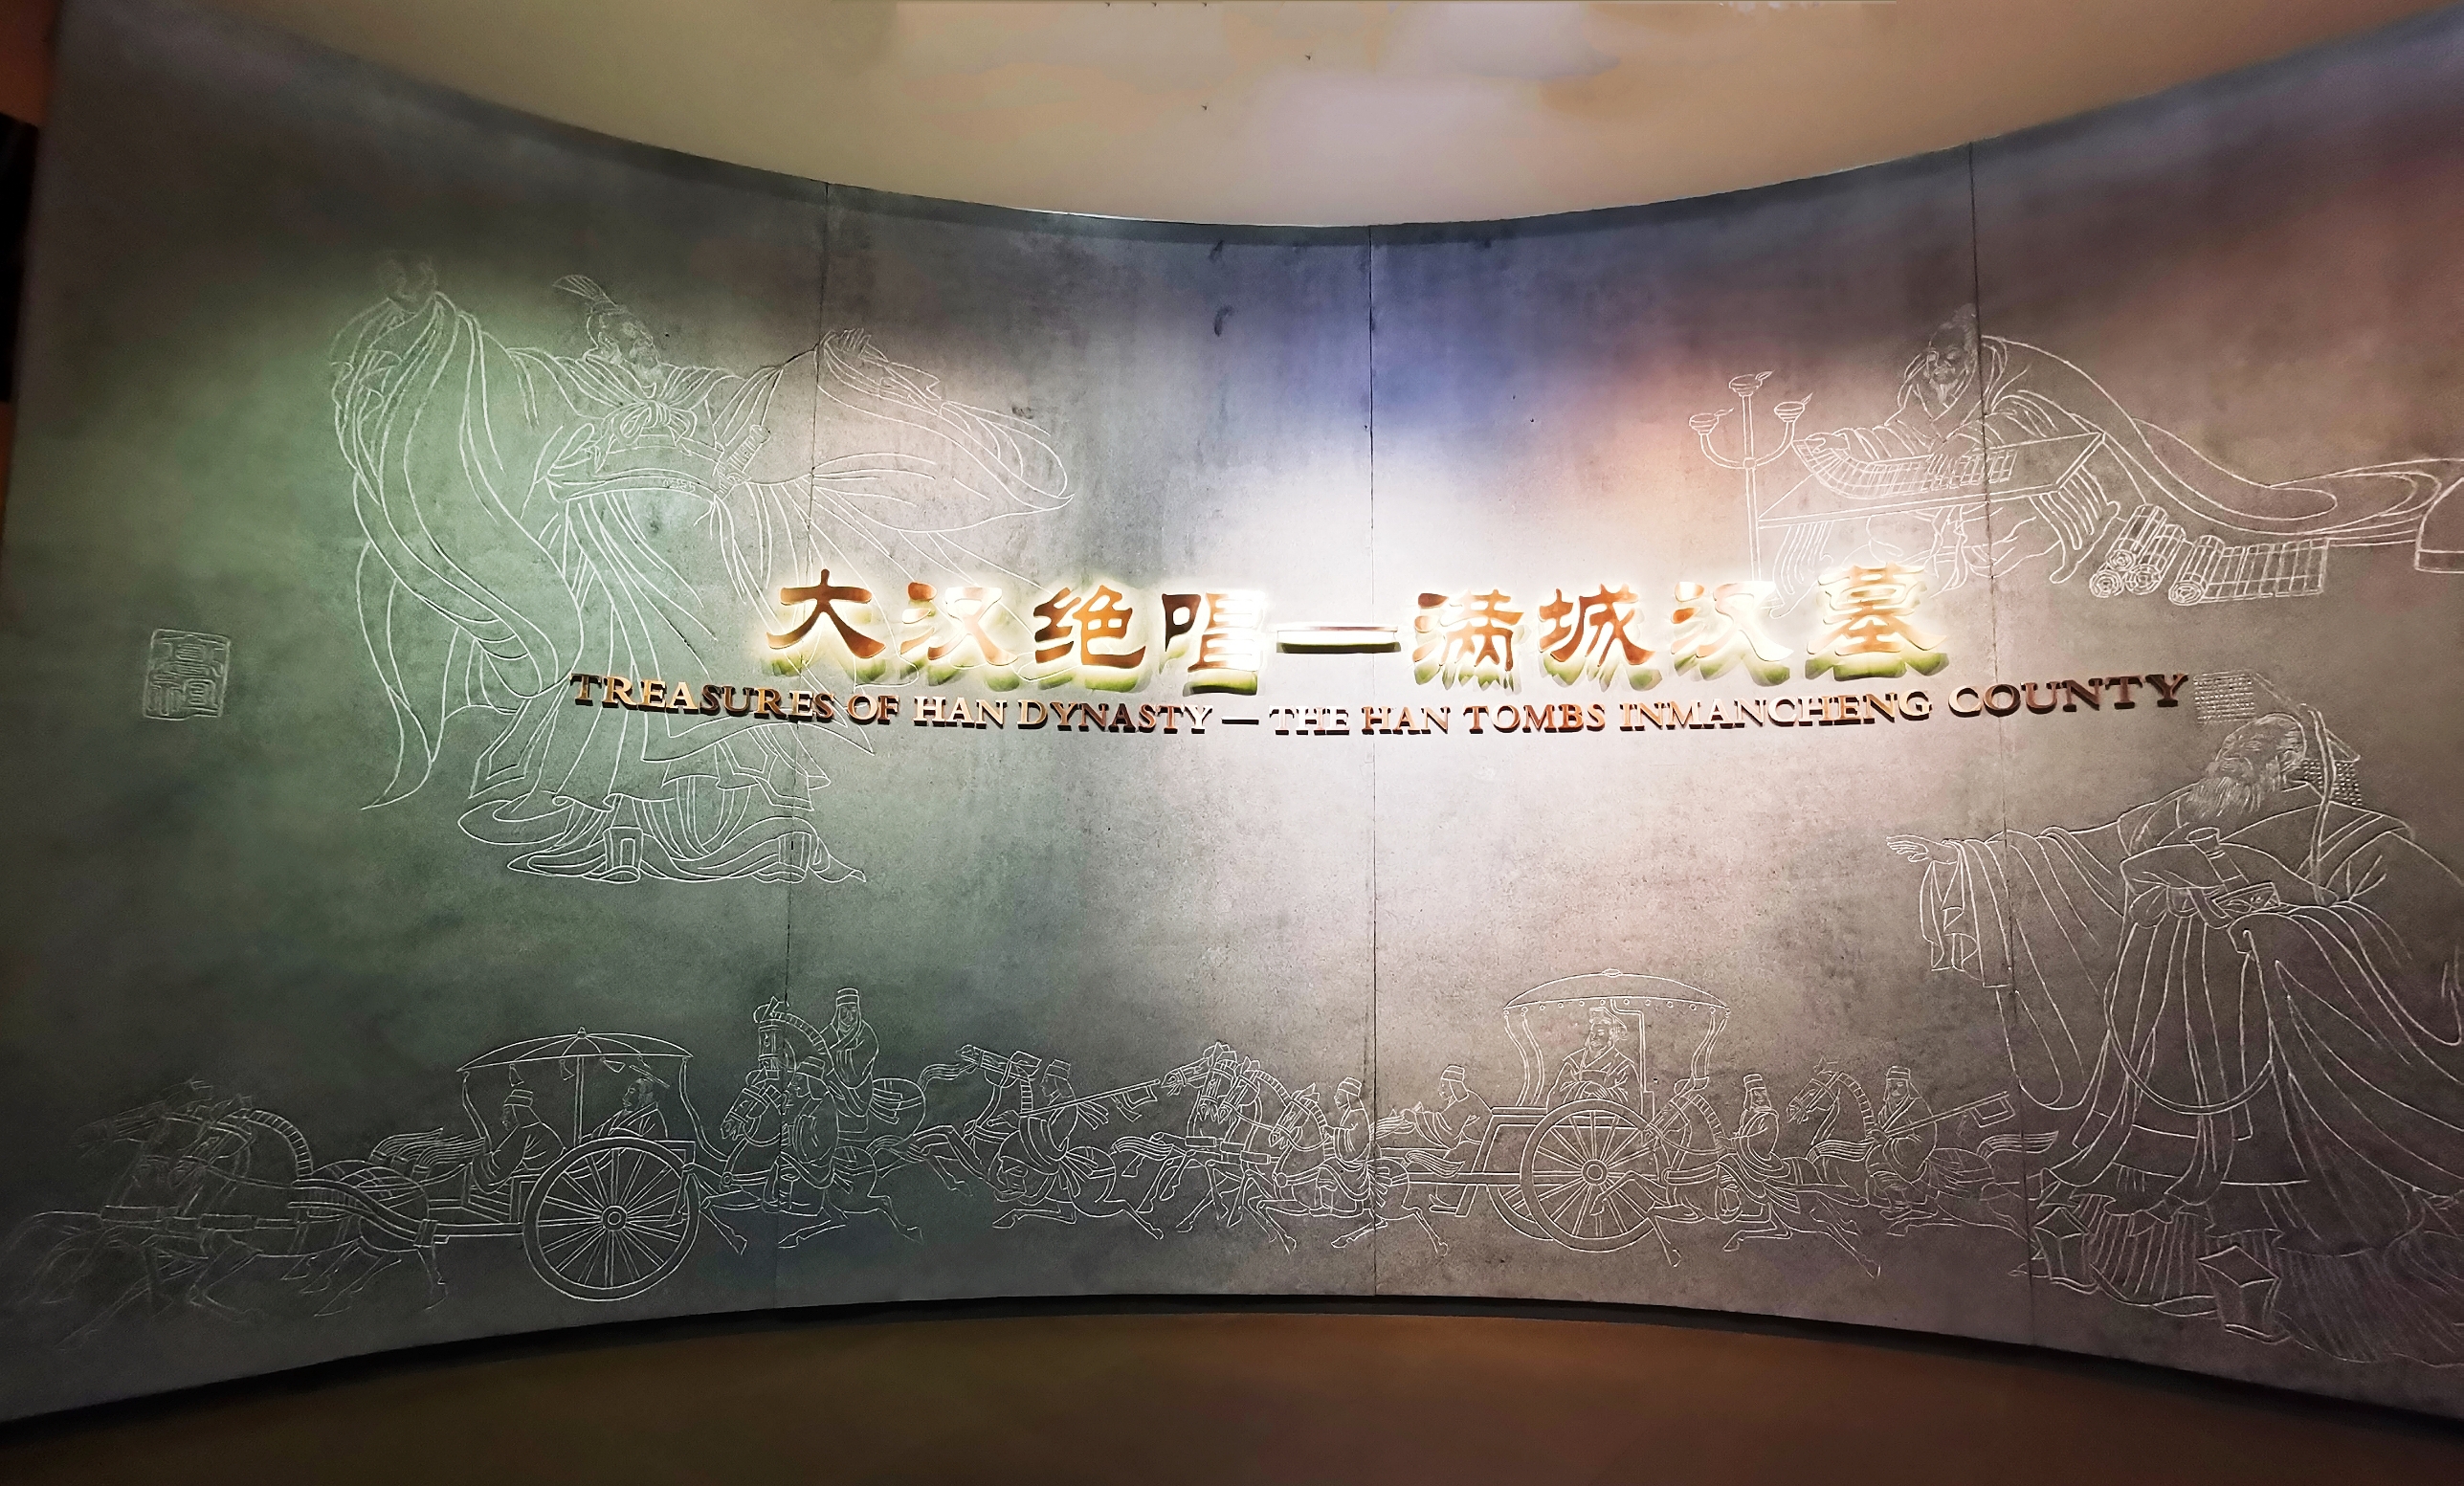 中国20世纪百项考古大发现“大汉绝唱-满城汉墓”。